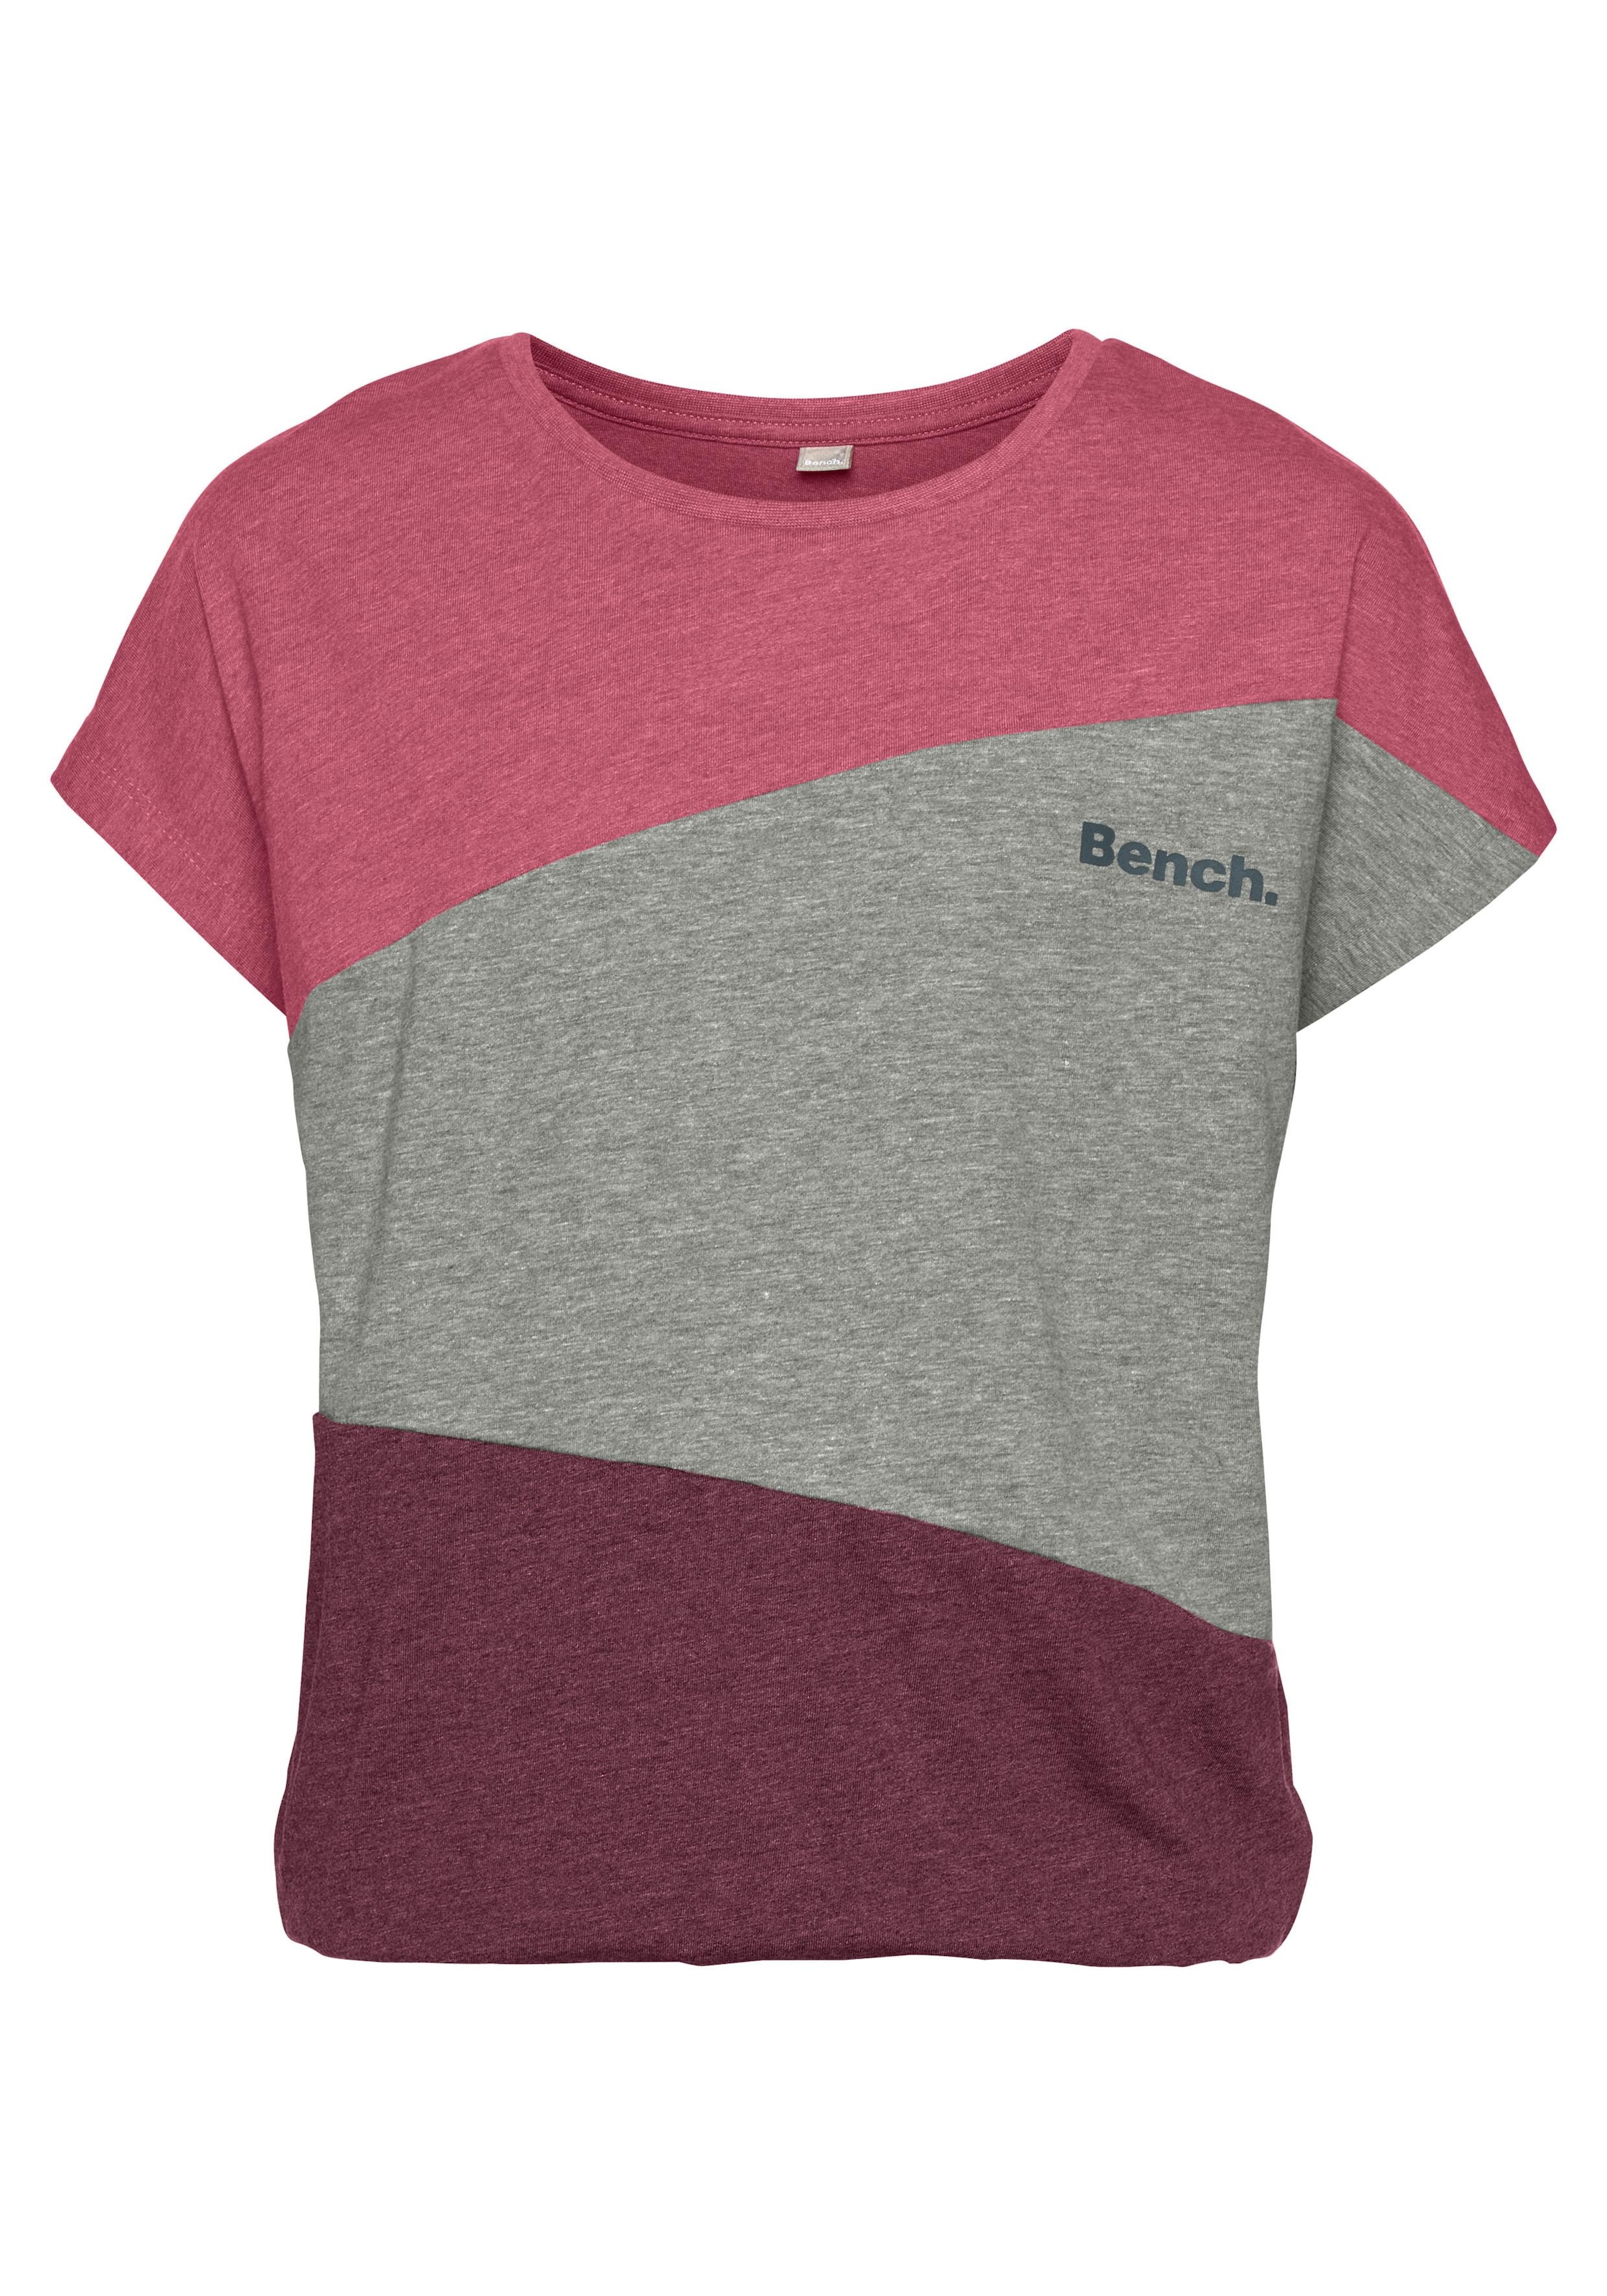 Trendige Bench. T-Shirt, mit modischen Einsätzen versandkostenfrei  bestellen